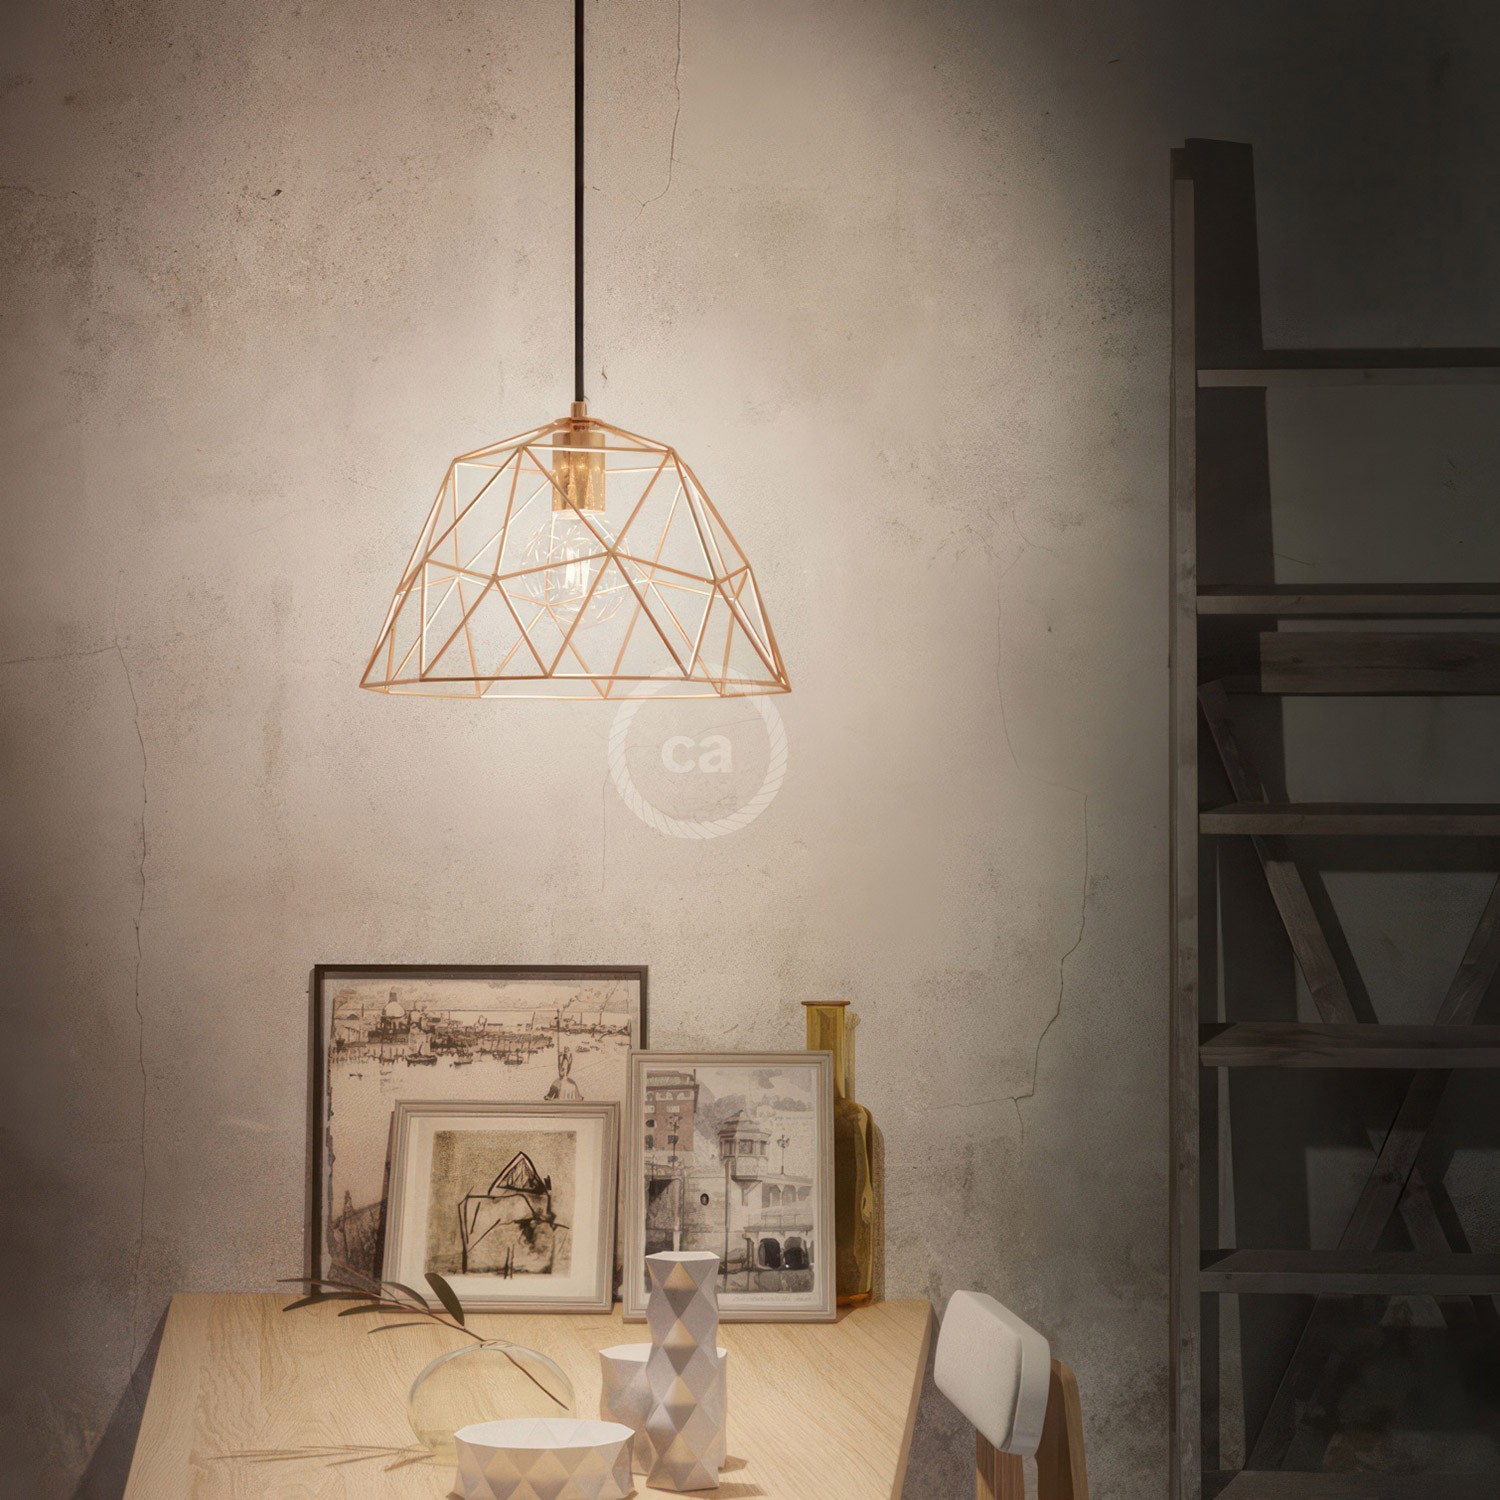 Viseče svetilo s tekstilnim kablom in senčilom Dome - Izdelano v Italiji